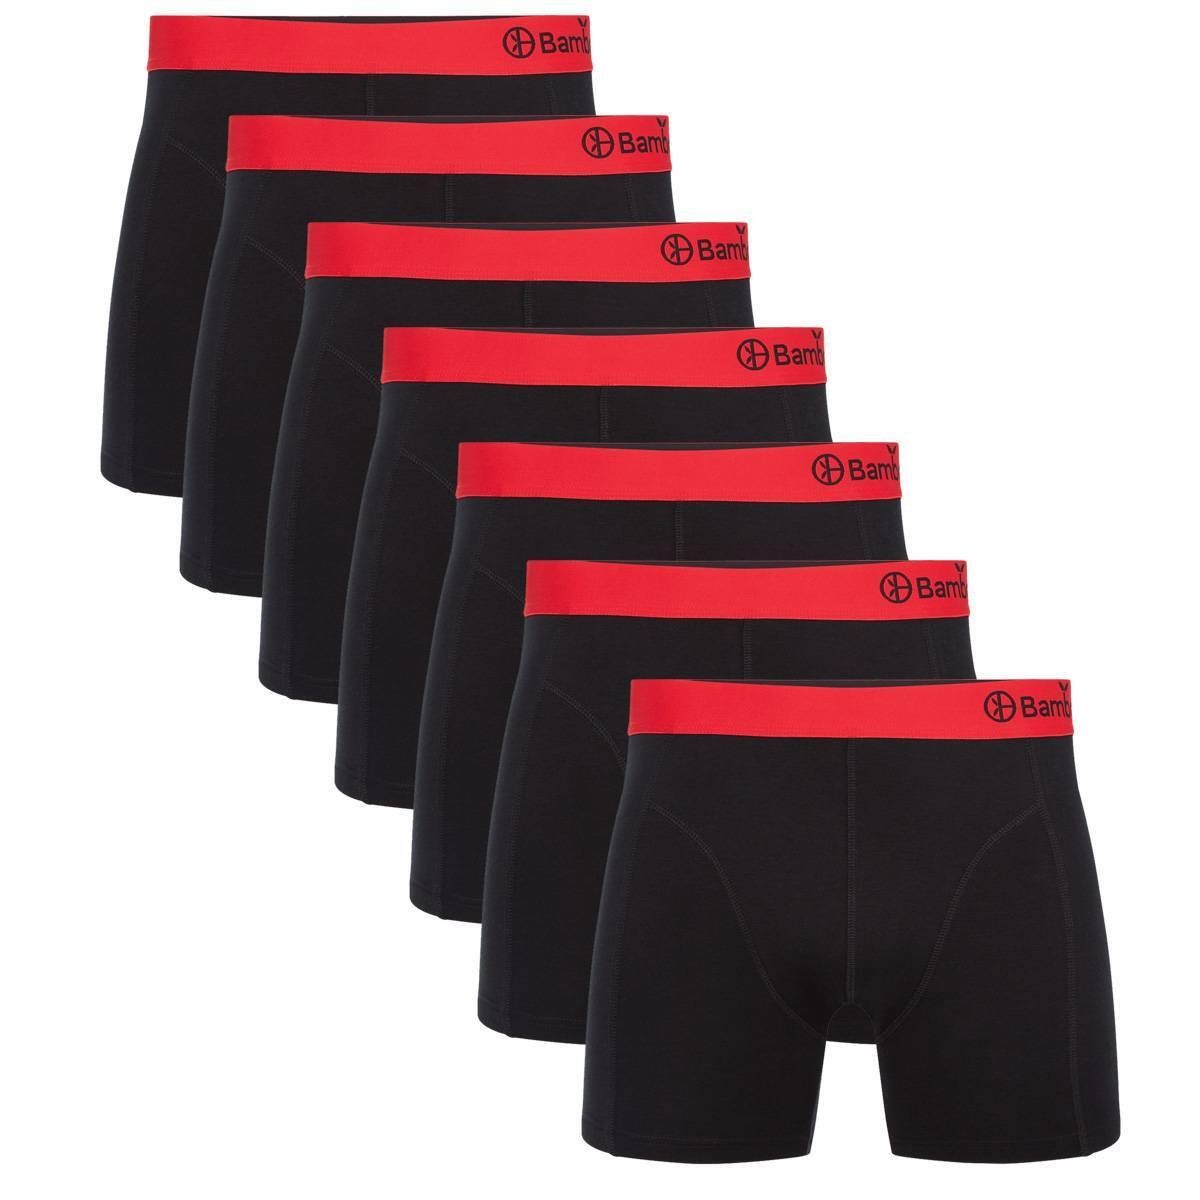 Bamboo basics Boxer Herren Boxer Shorts, 7er Pack - LEVI7P Schwarz/Rot